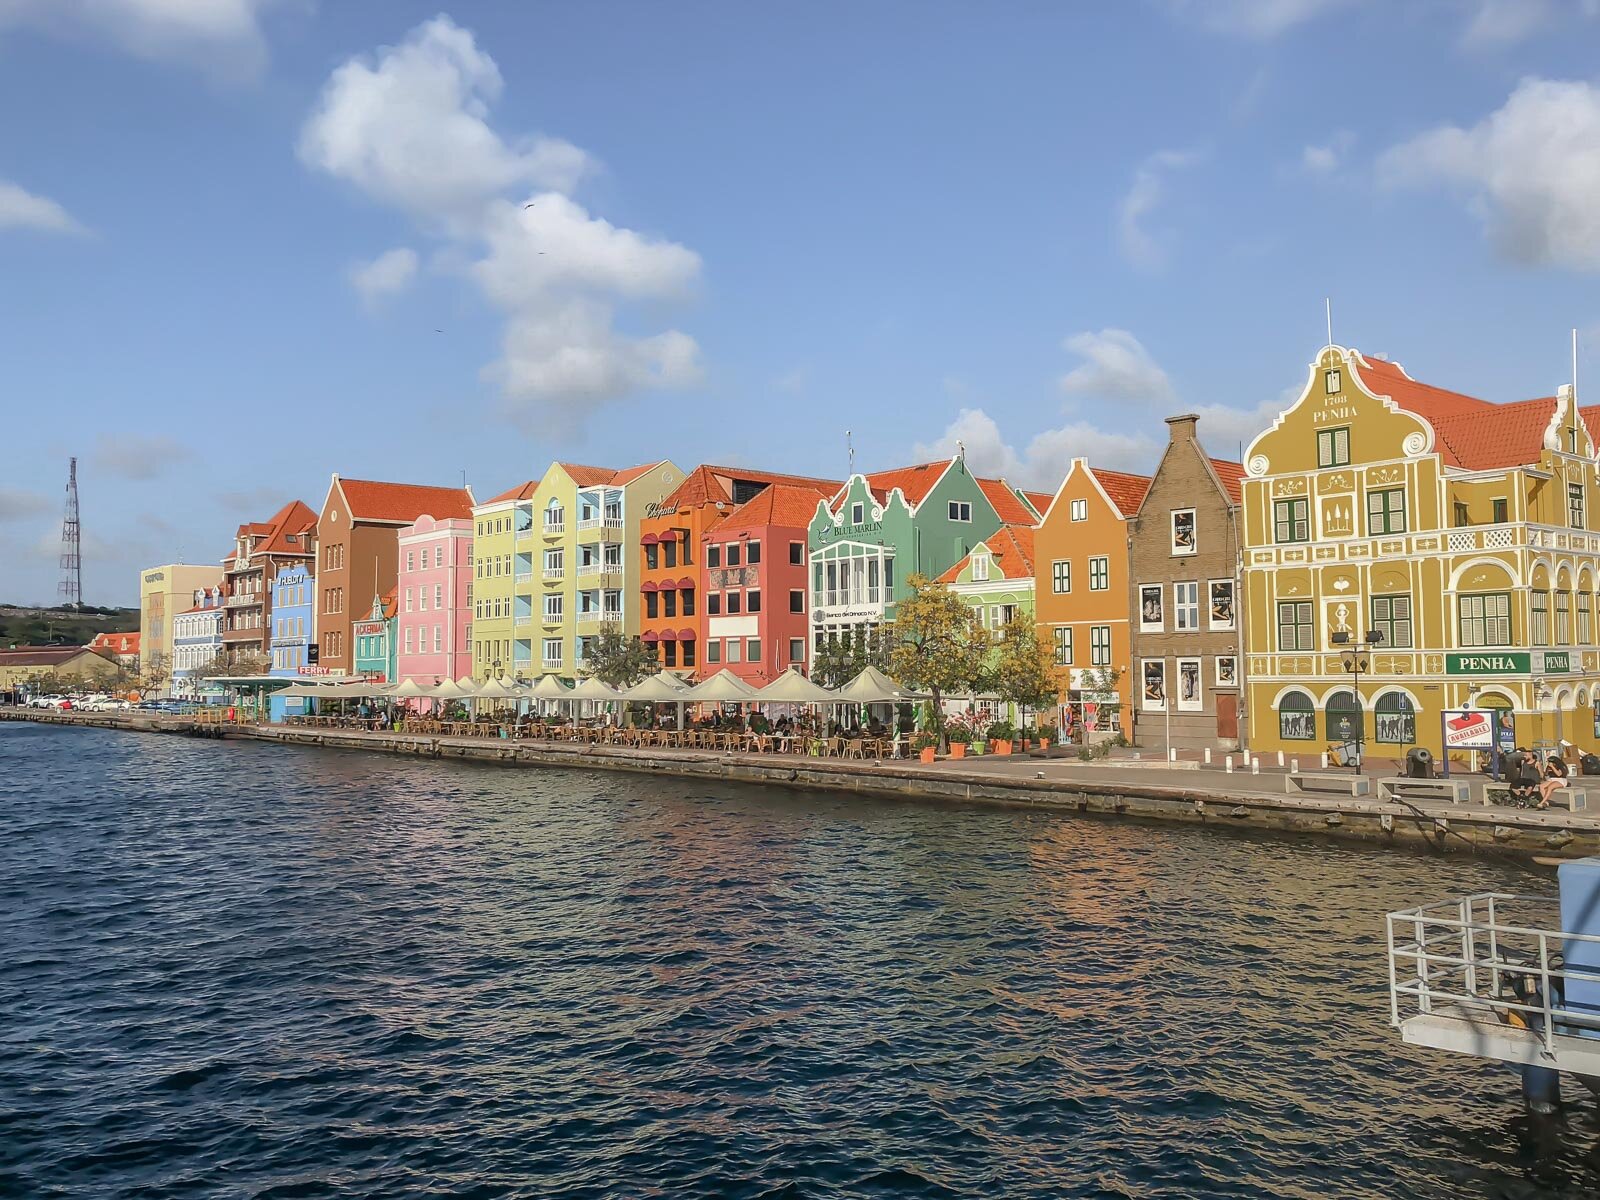 Die farbenfrohe Häuschen an der Handelskade in Willemstad sind weltweit bekannt